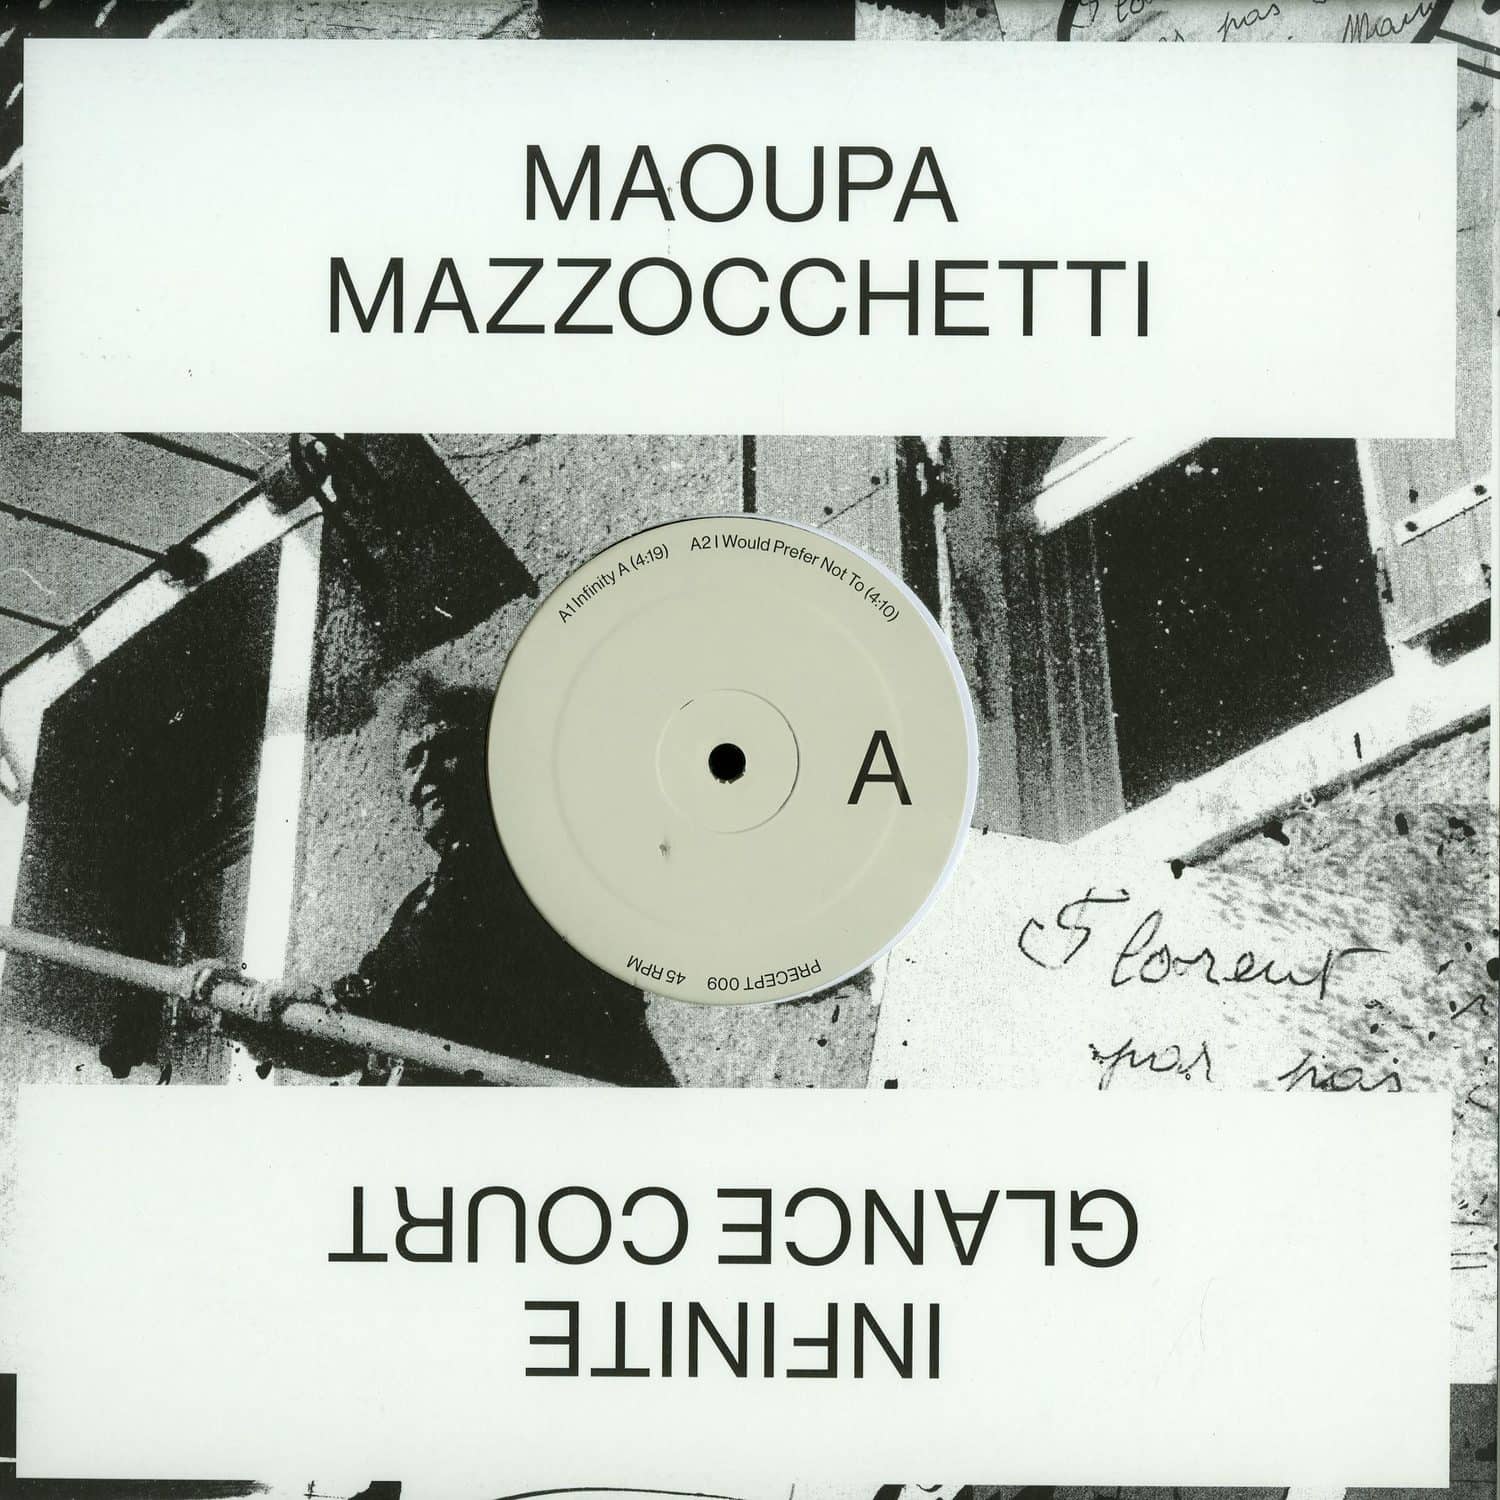 Maoupa Mazzocchetti - INFINITE GLANCE COURT